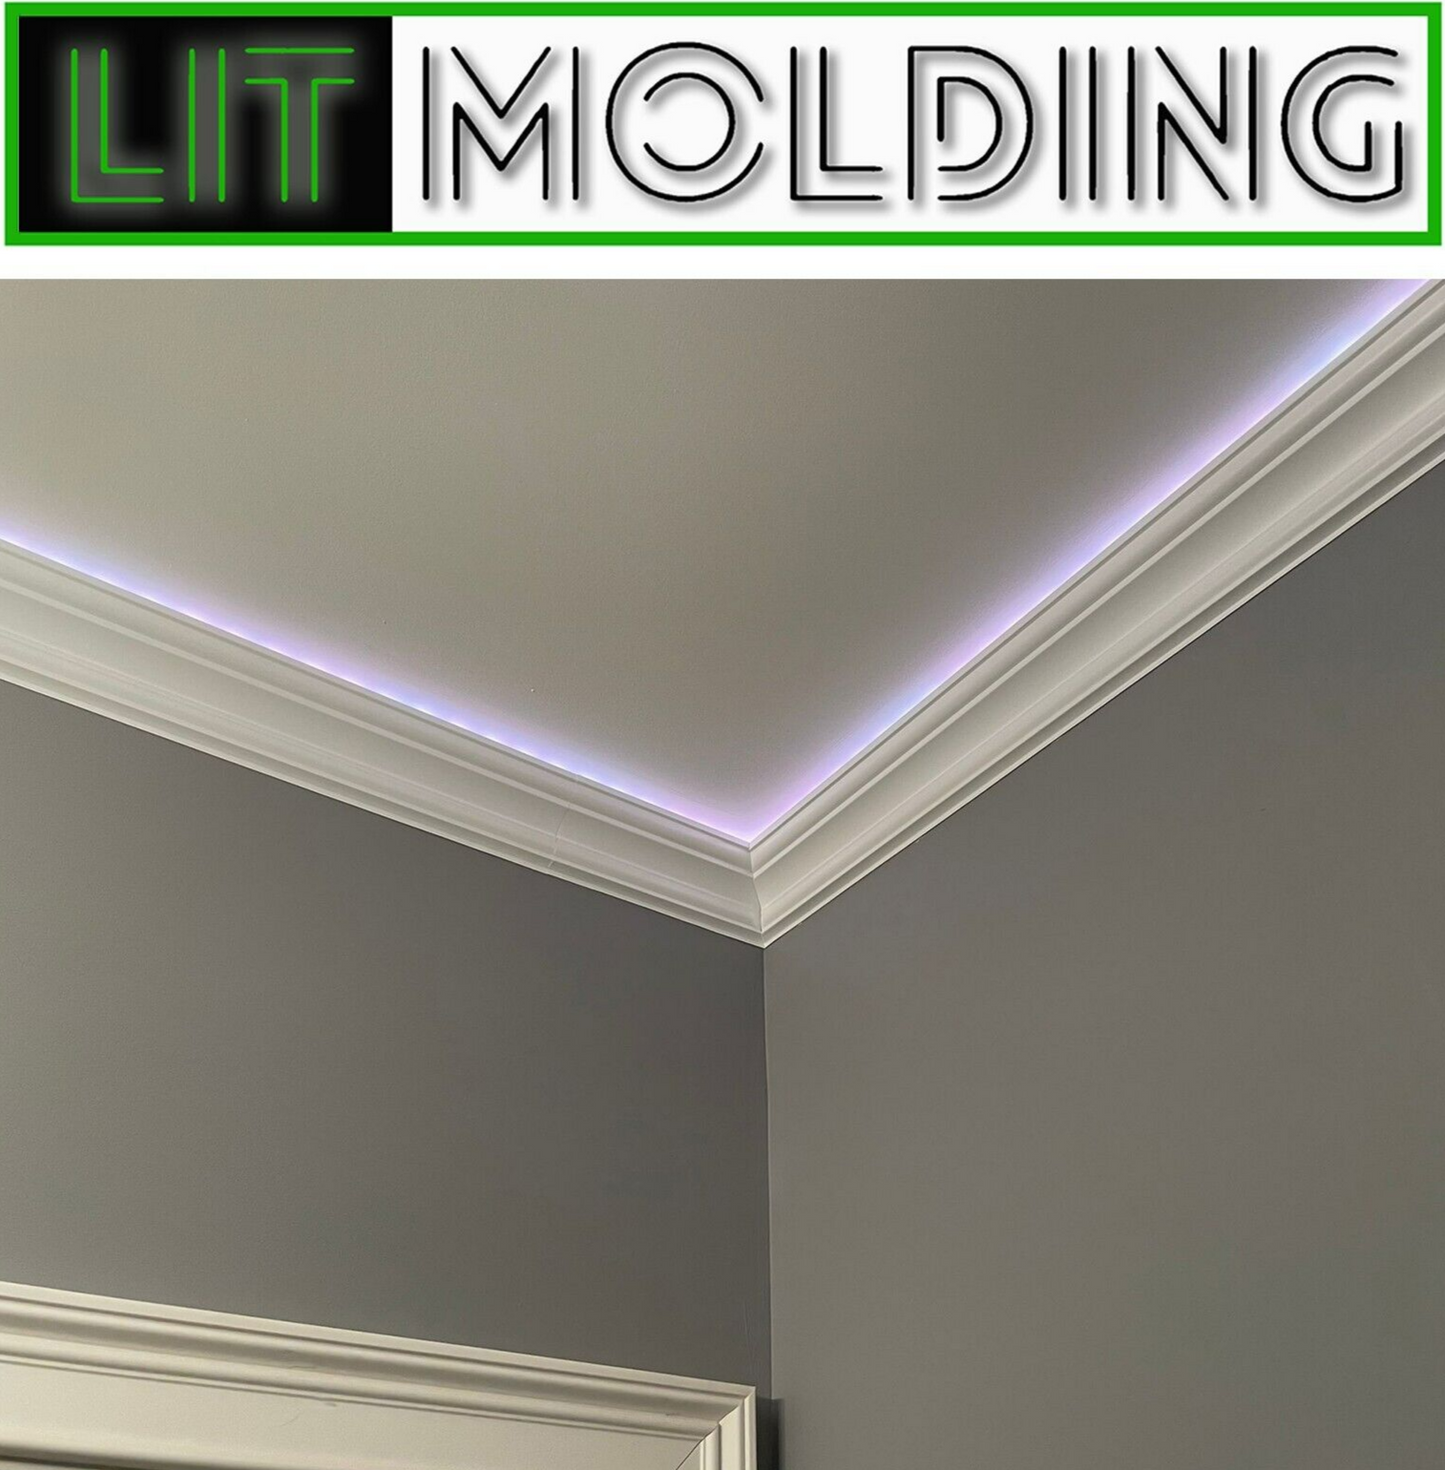 4.5" LIT Molding LED backlit crown molding 34' kit.